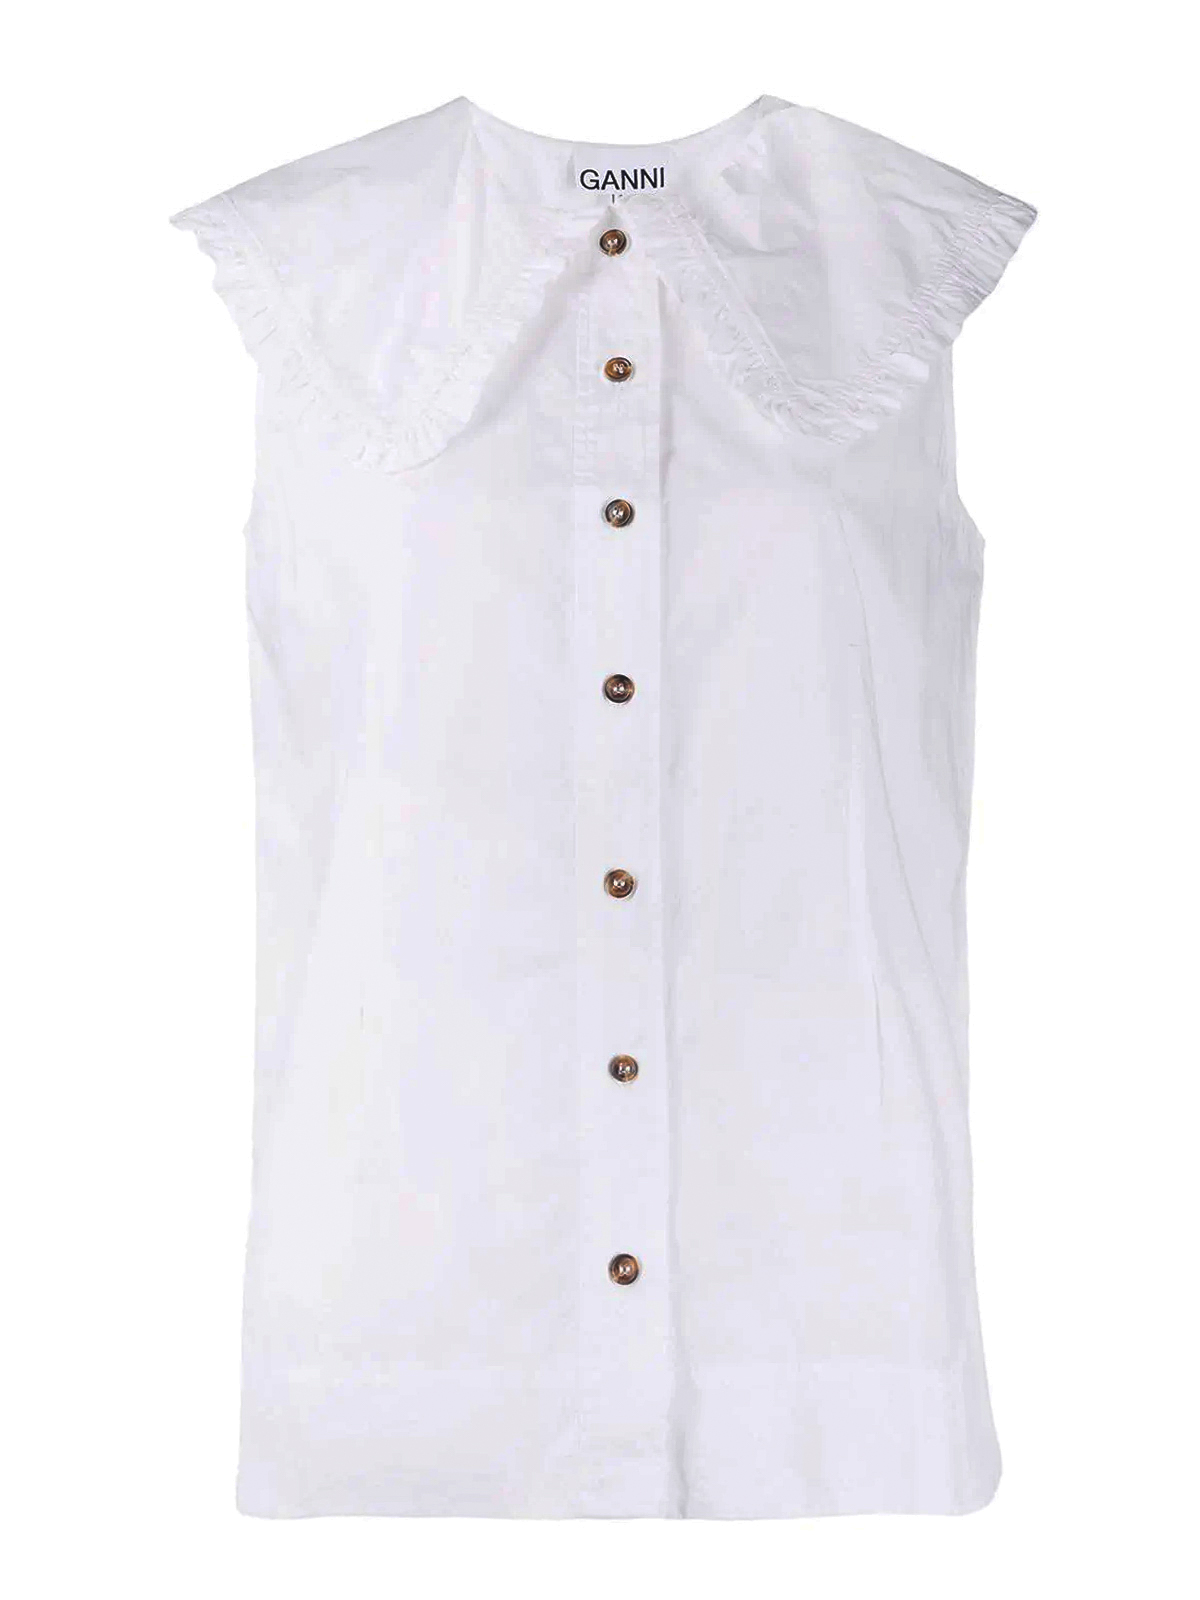 Ganni Peter Pan Collar Cotton Shirt In White